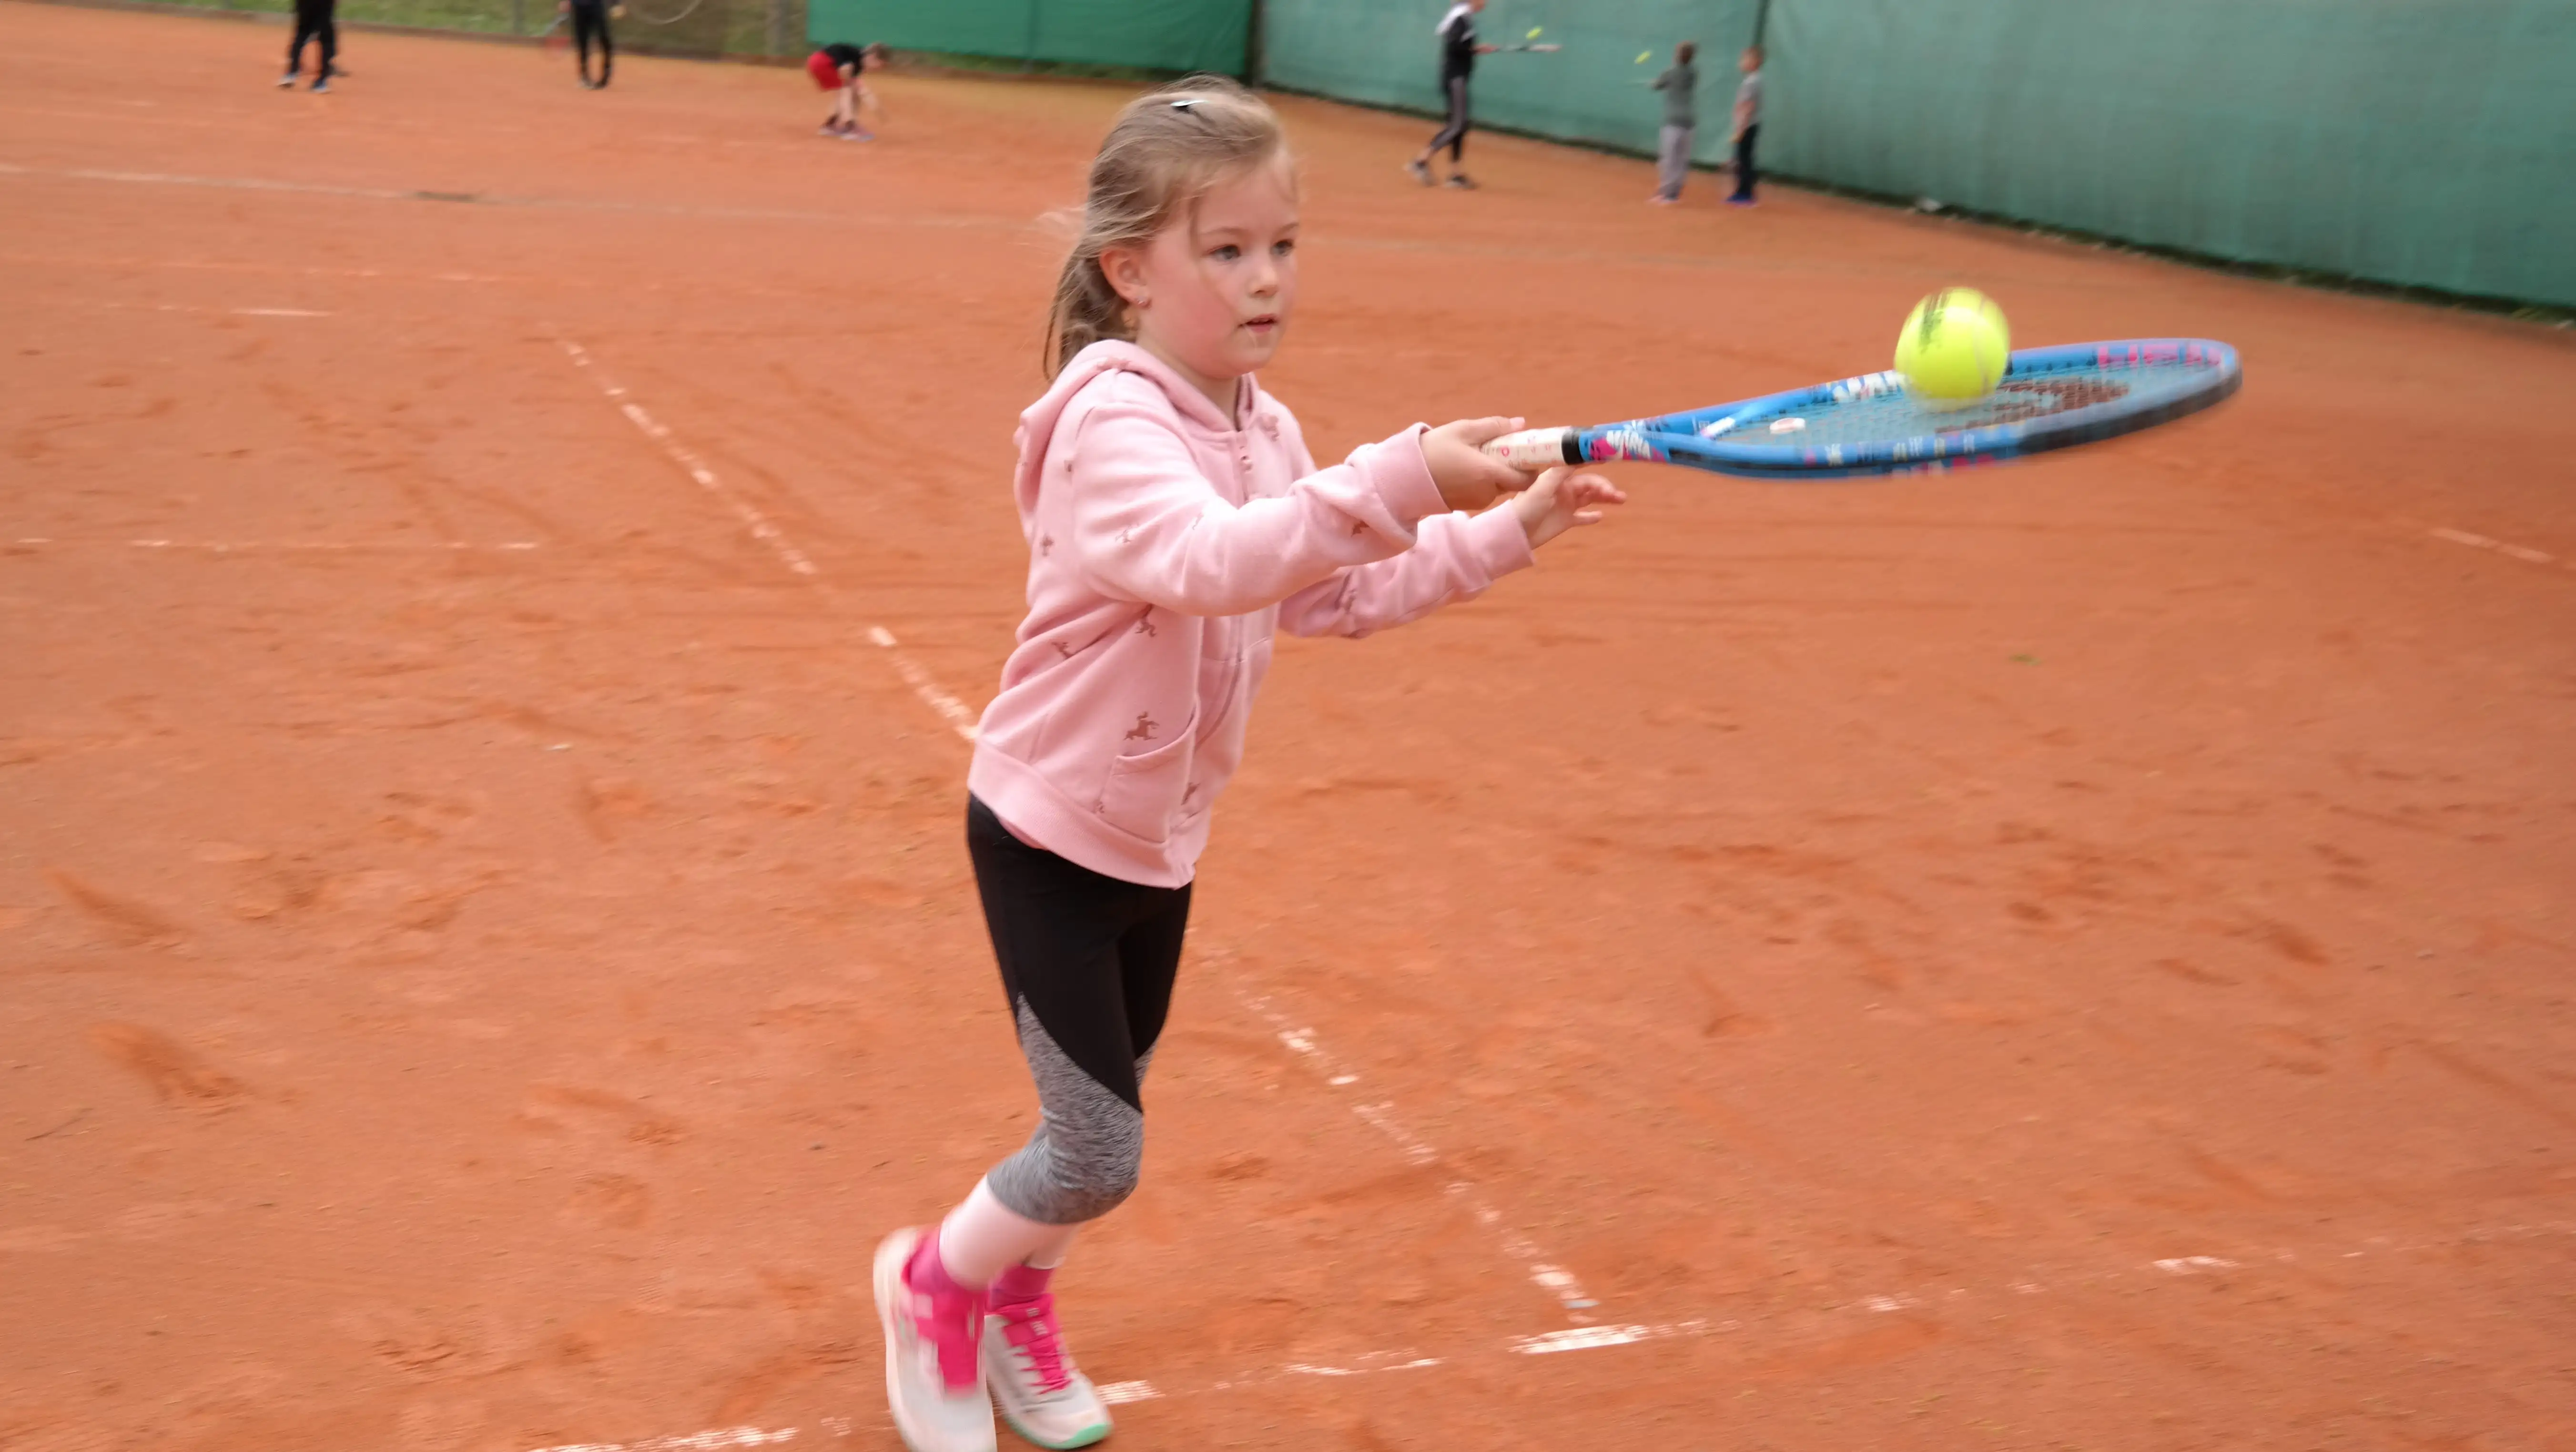 Kind spielt mit Tennisschläger